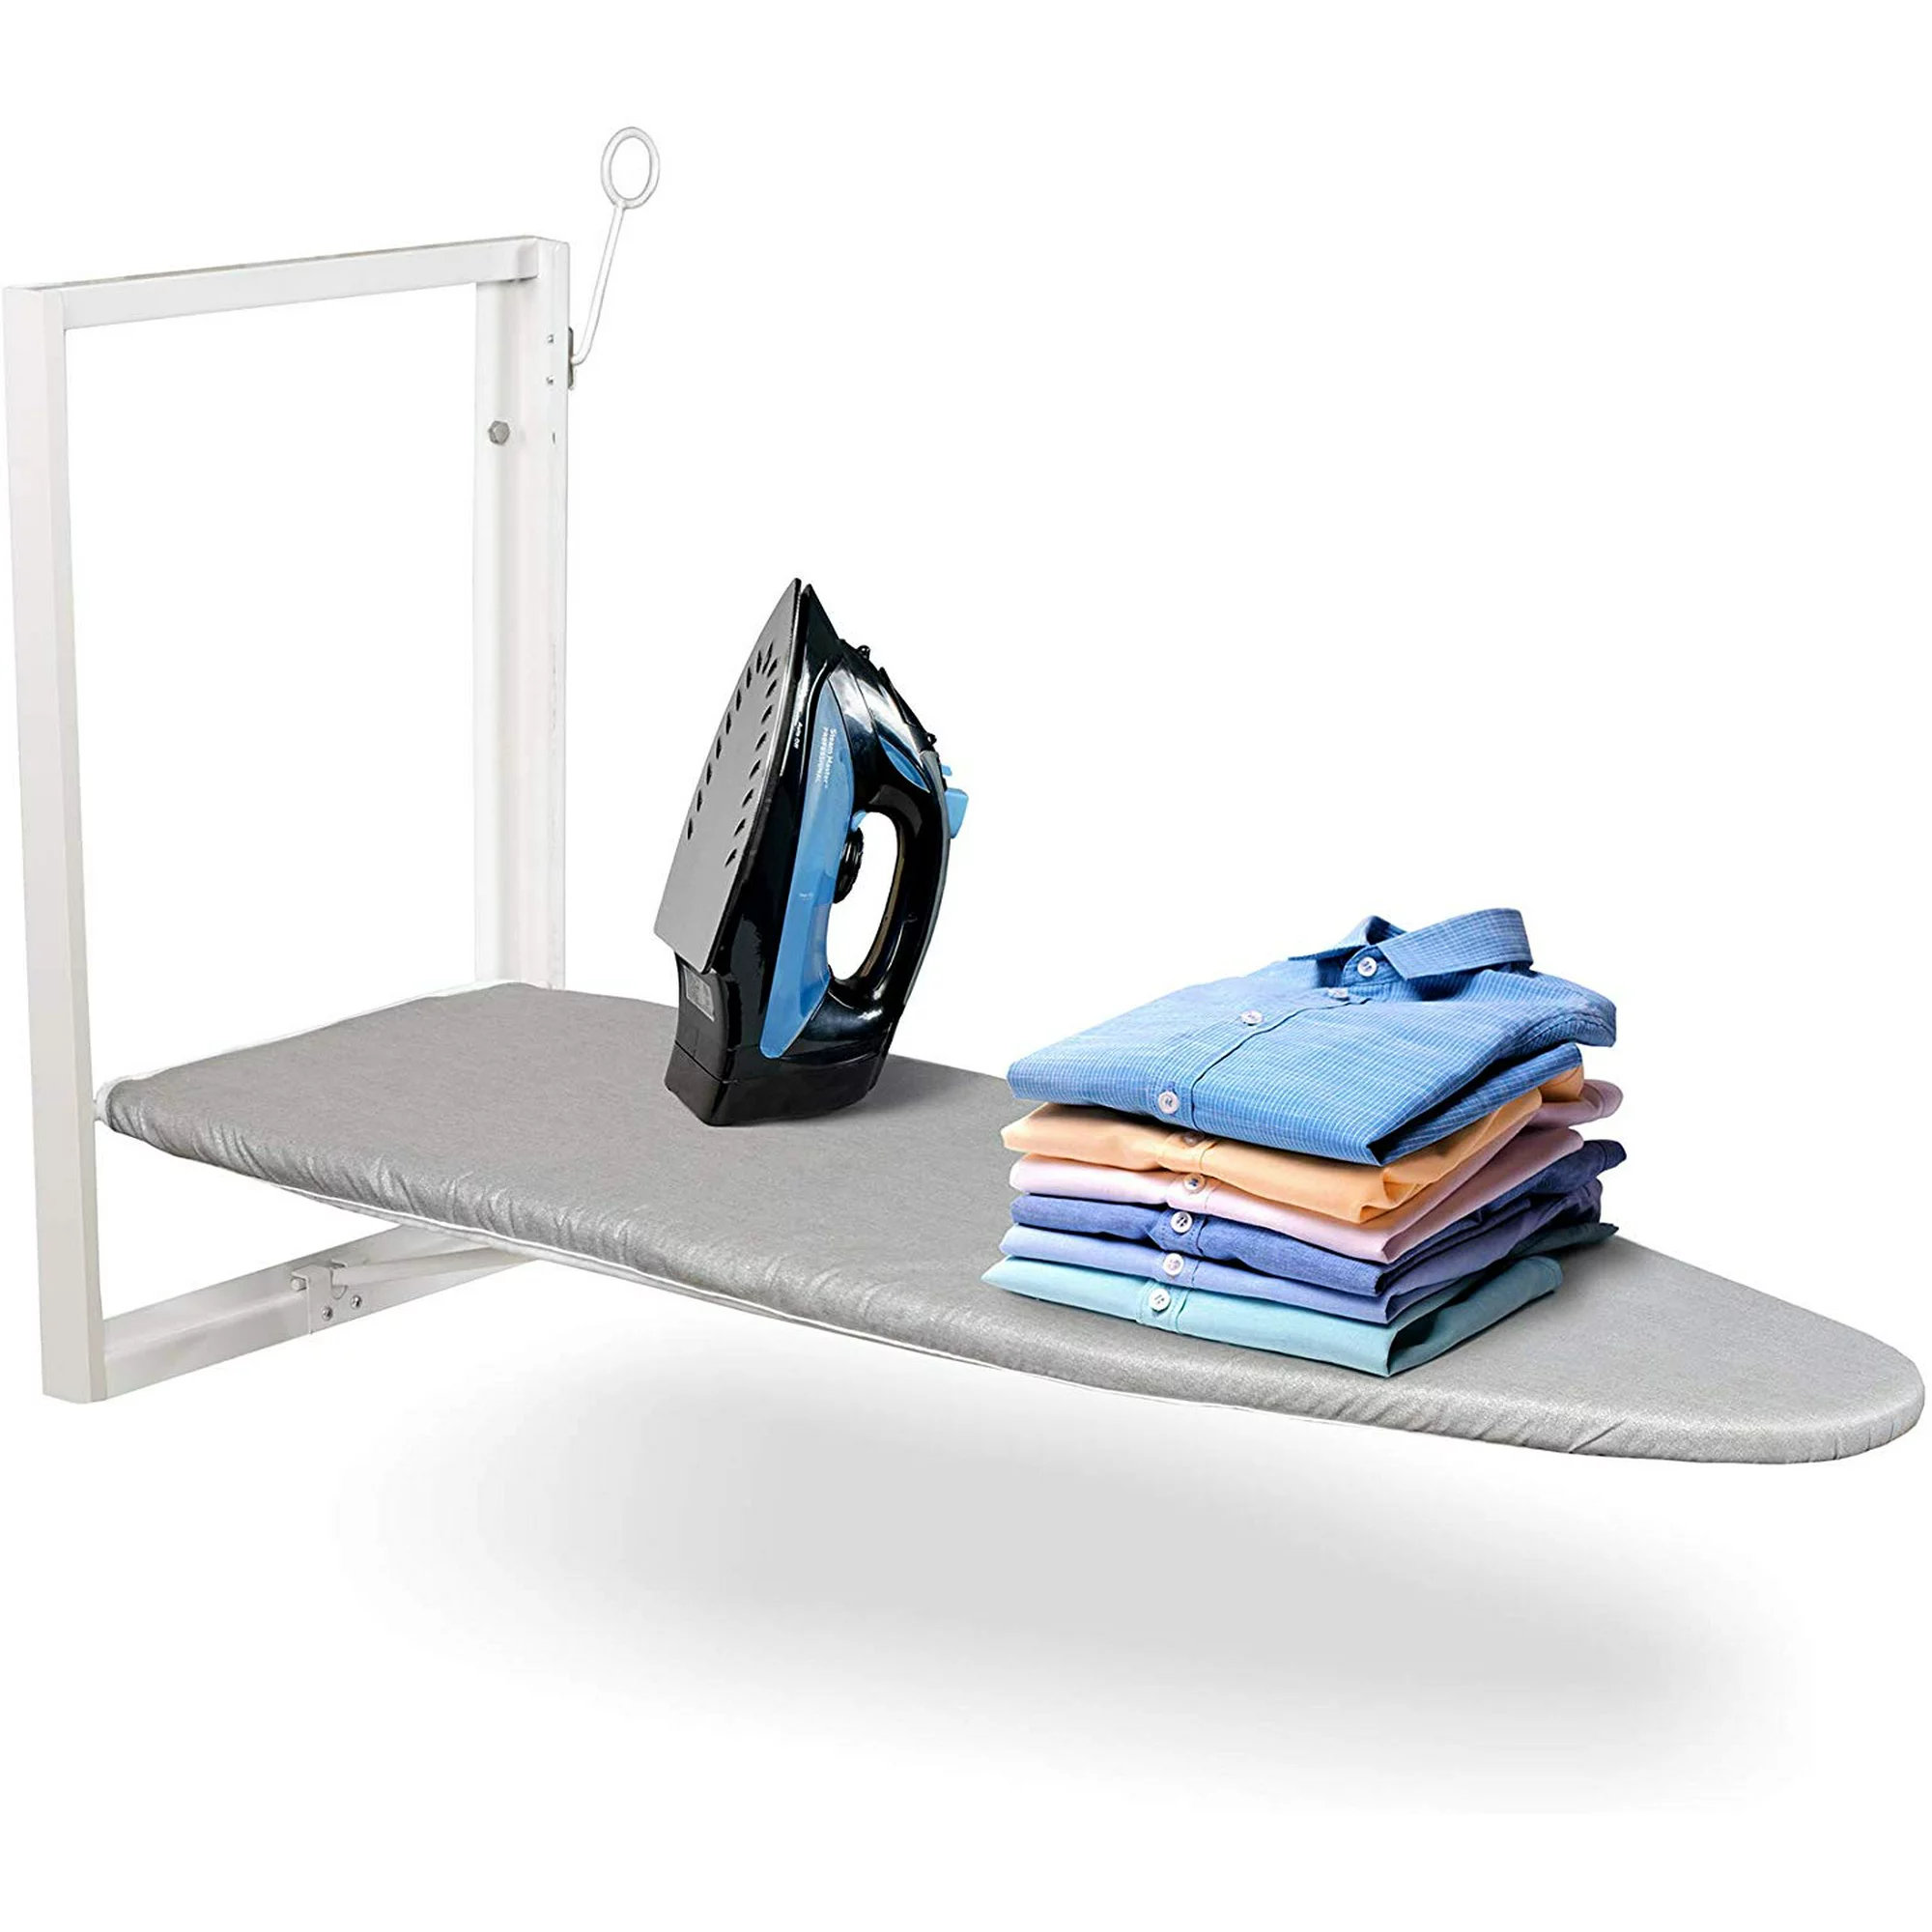 Dorm Must Have Accessory - Dorm Board College Mini Ironing Board